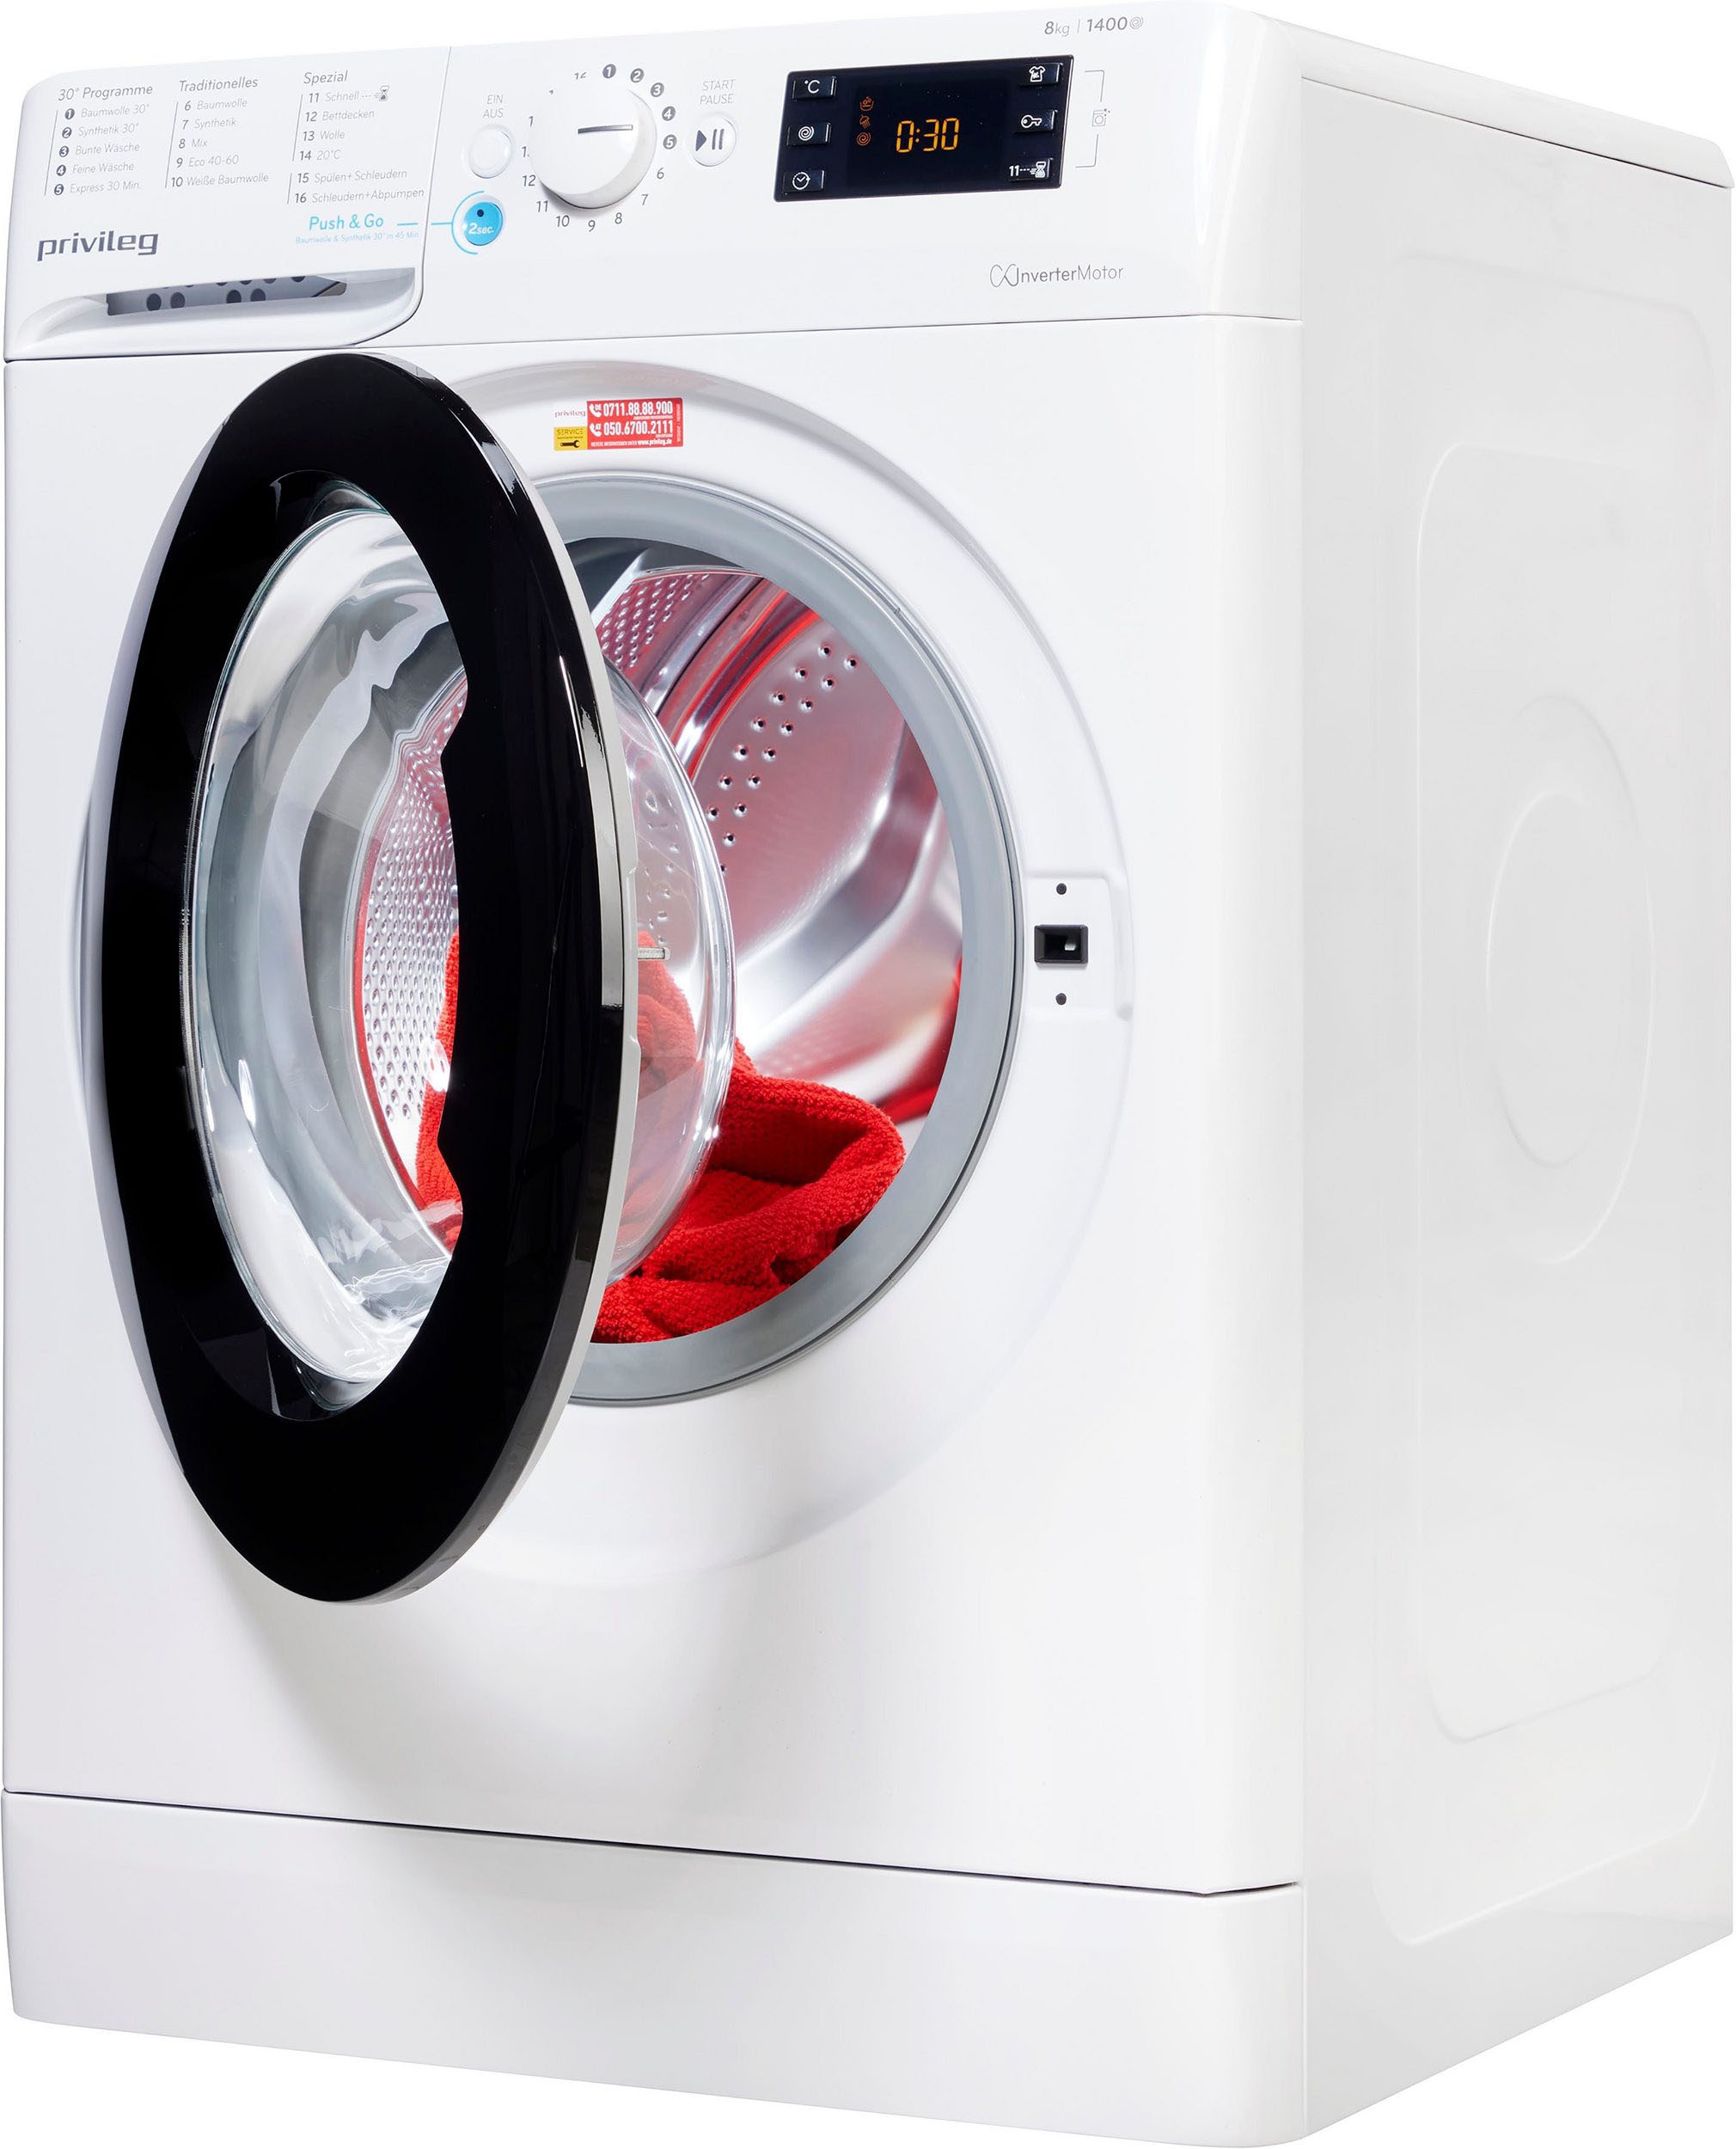 Privileg Waschmaschine, PWF X 873 kg, 8 1400 kaufen U/min N, online